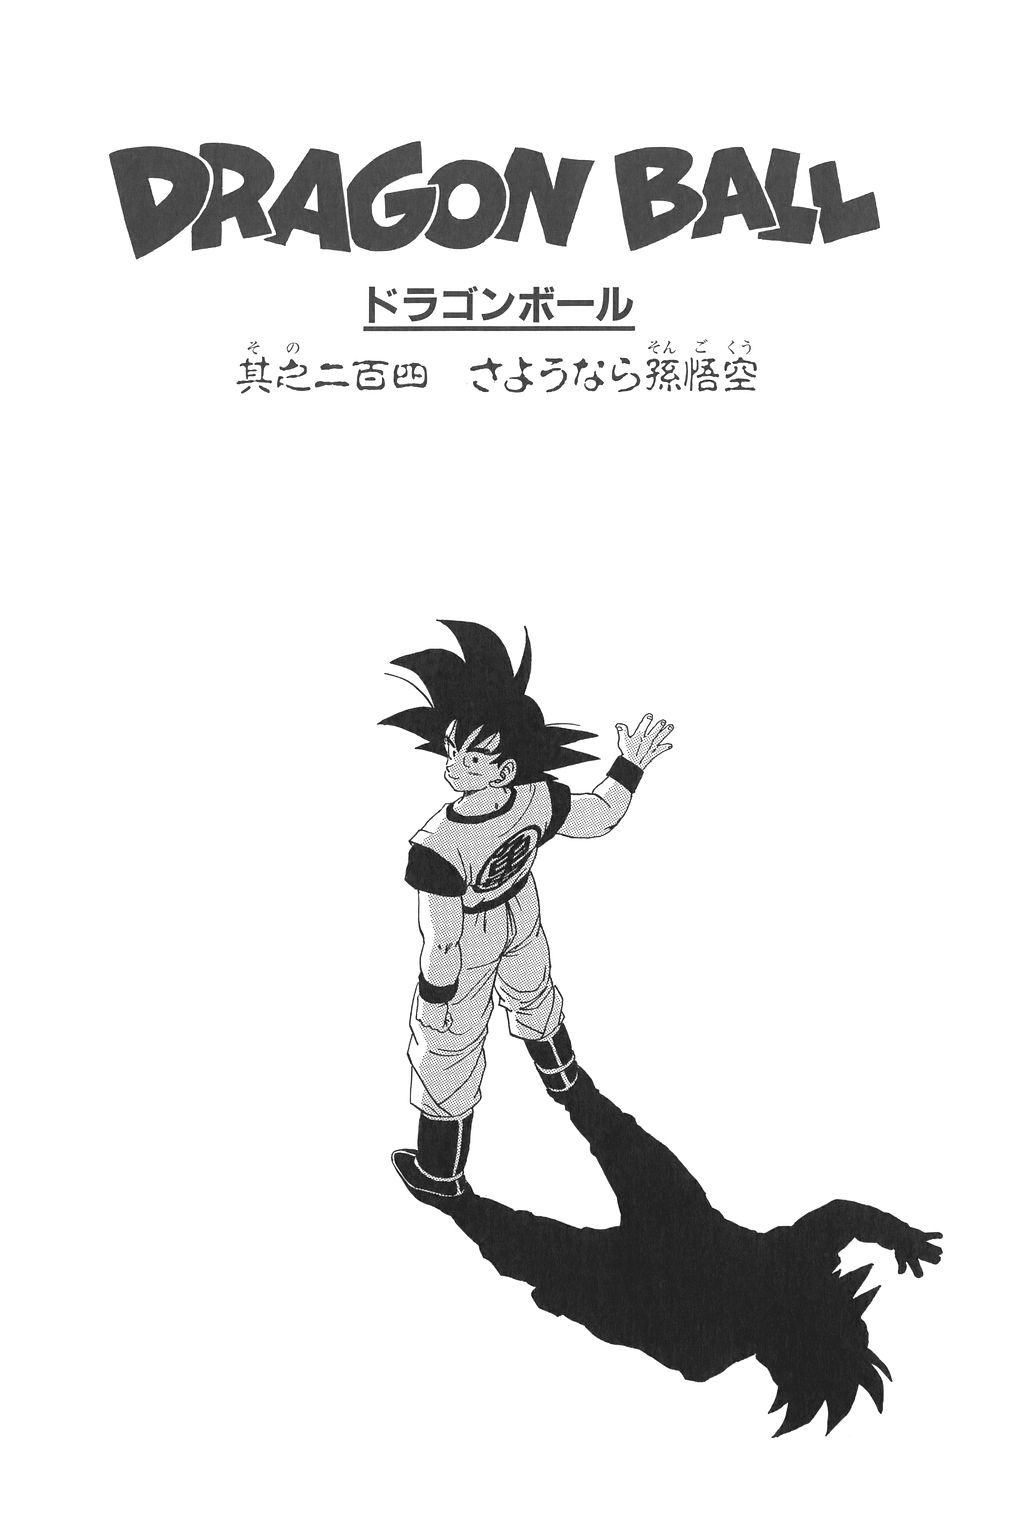 Manga - Dragon Ball Z Son Goku, Desenho por Ugo Gravent